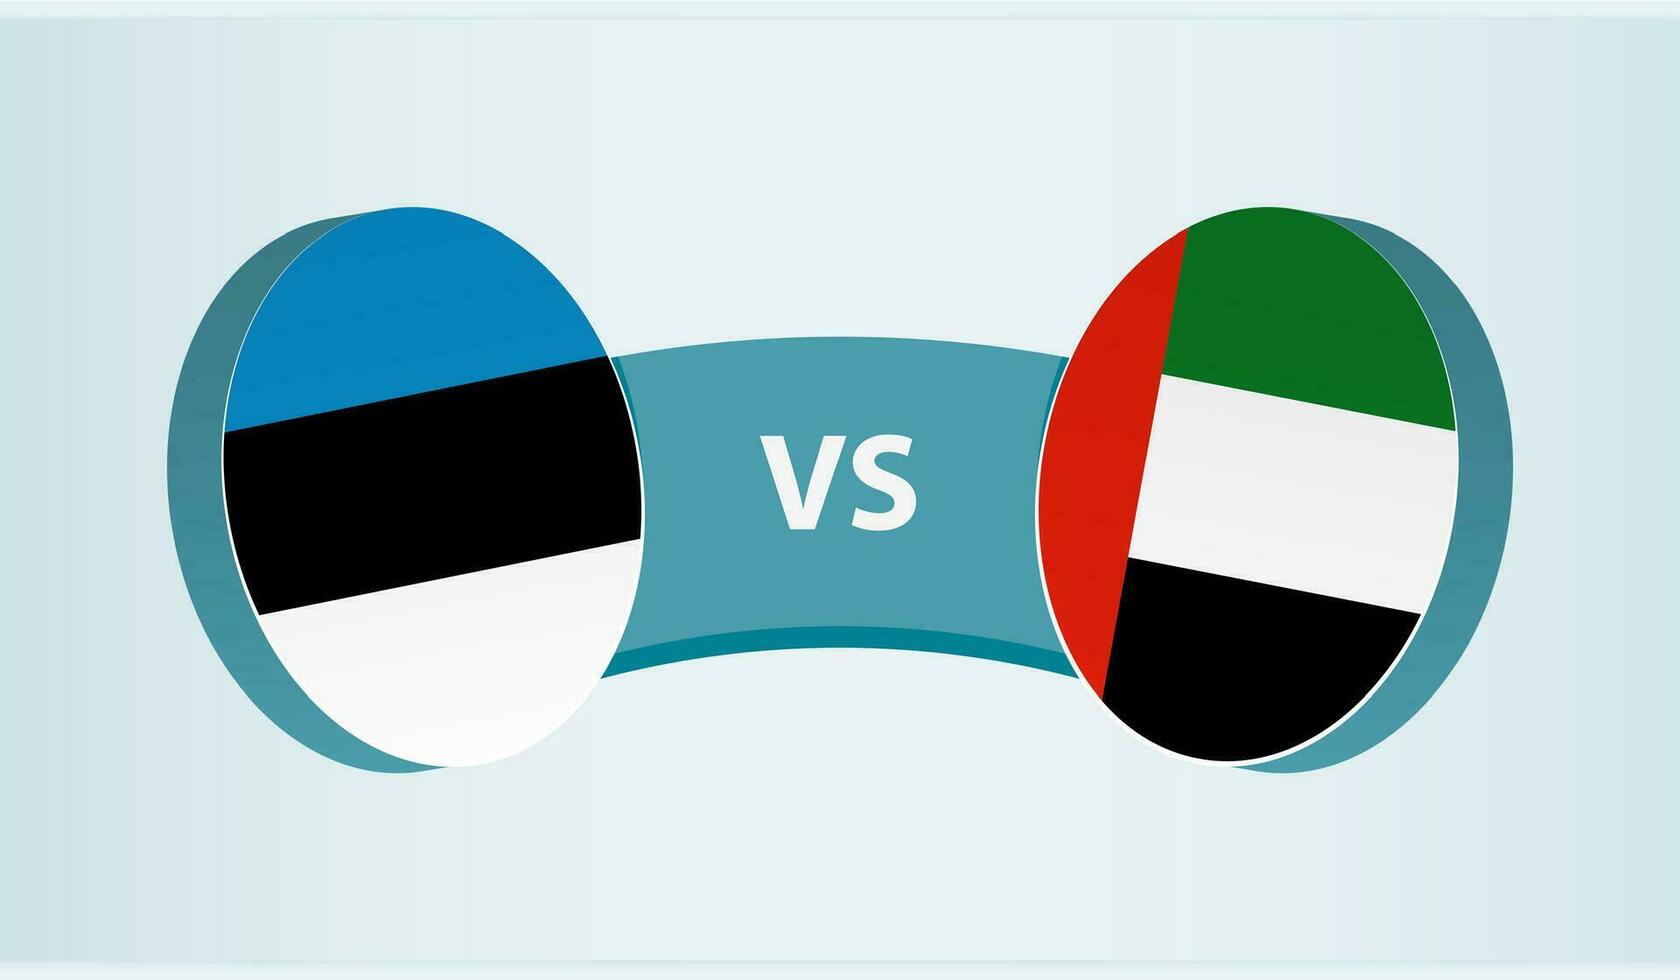 Estonia versus United Arab Emirates, team sports competition concept. vector